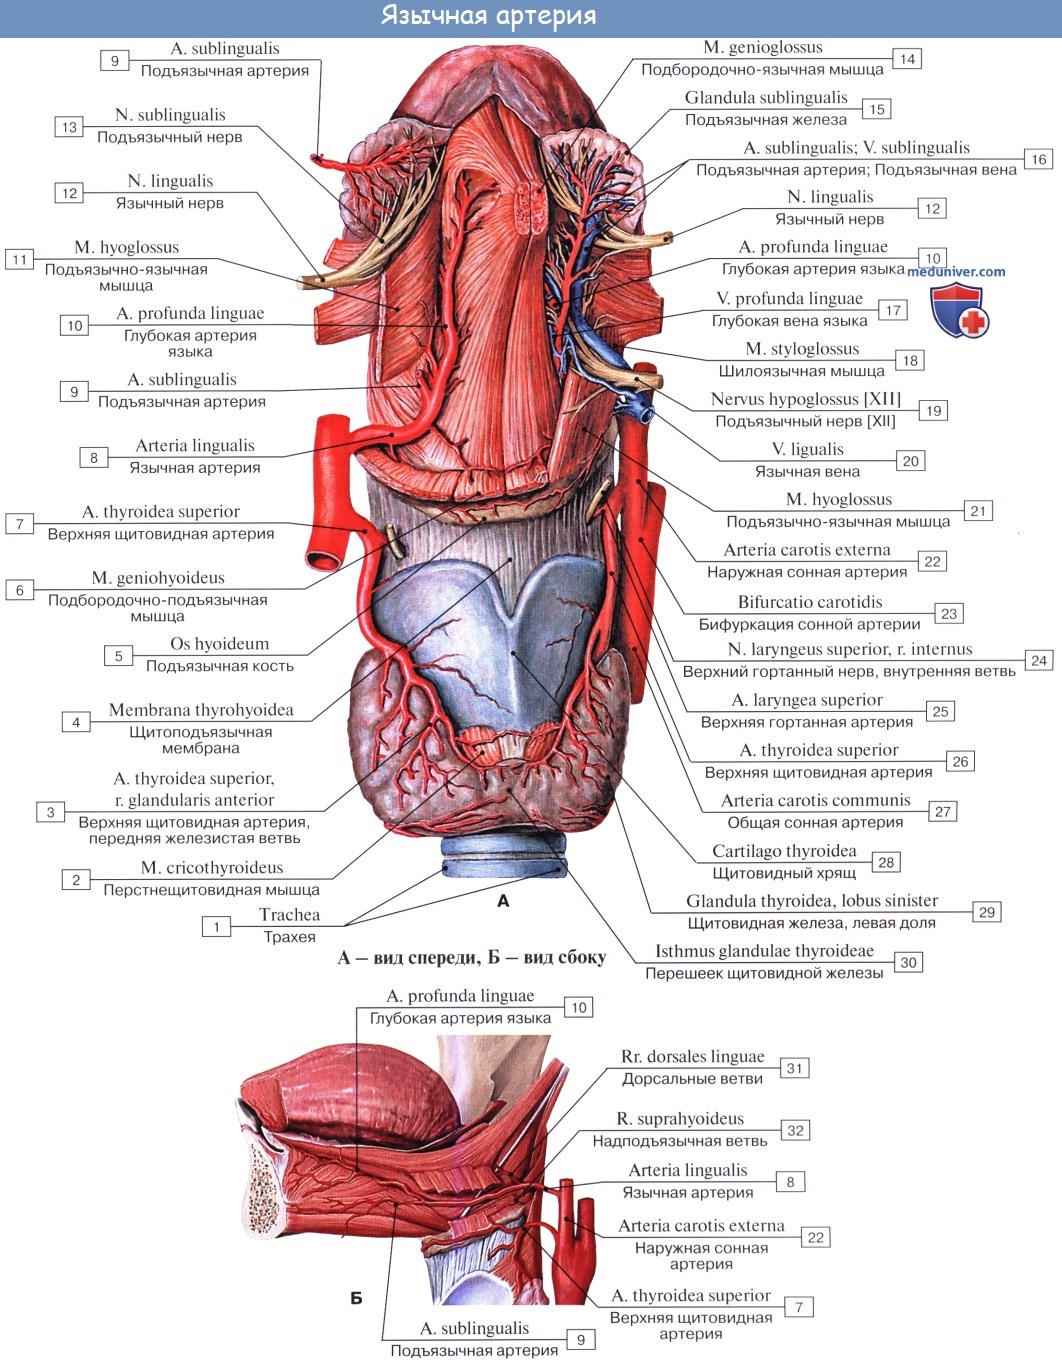 Анатомия: Наружная сонная артерия, a. carotis externa. Передняя группа ветвей наружной сонной артерии. Треугольник Пирогова